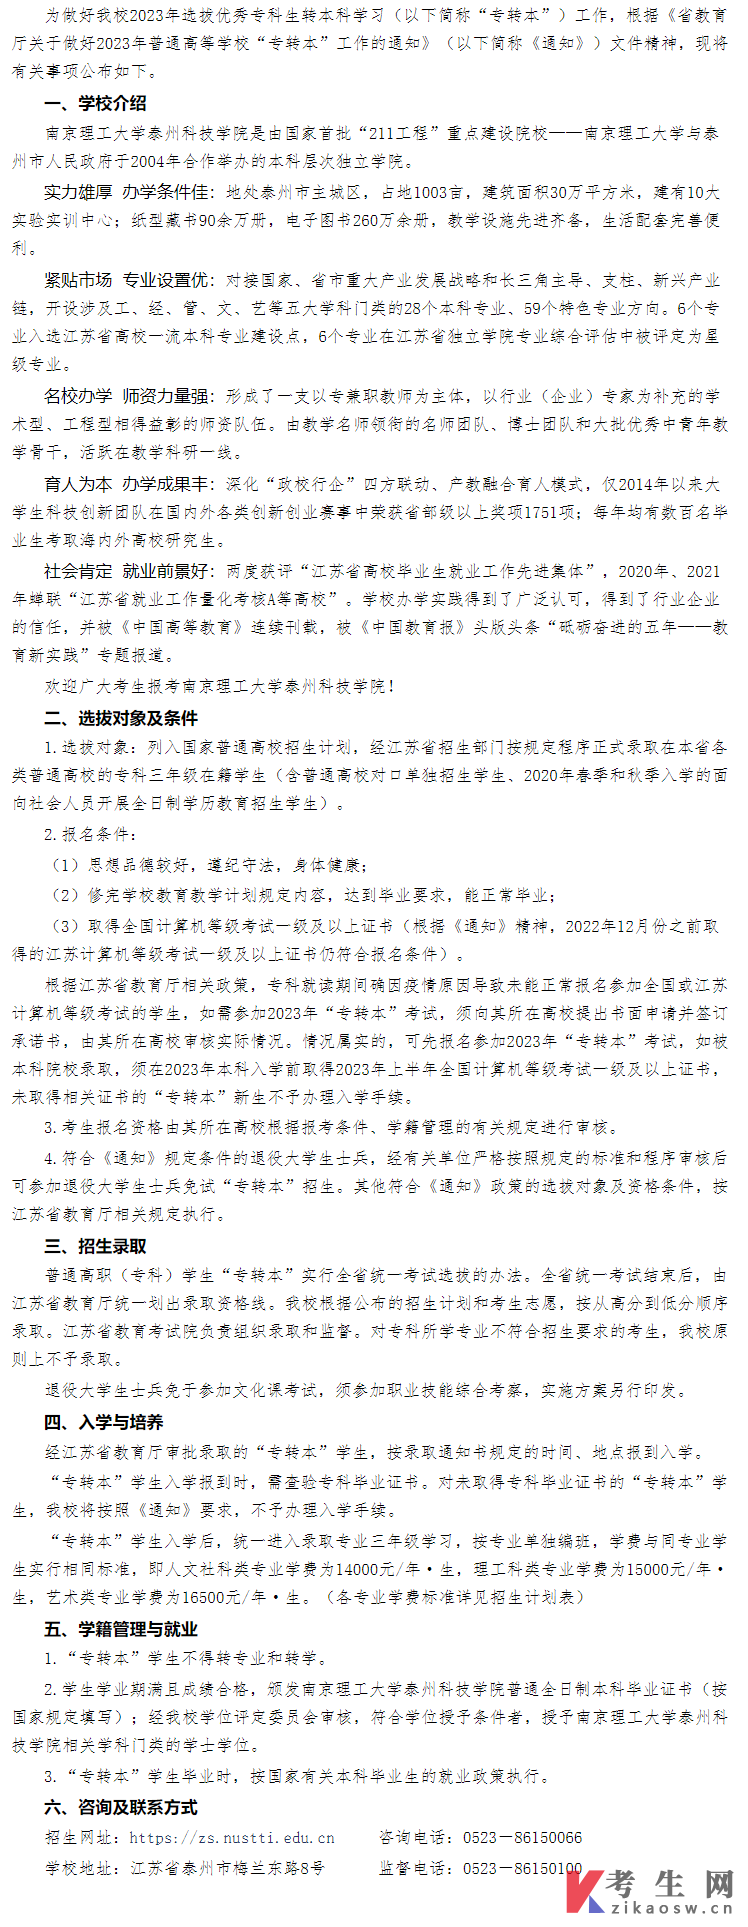 南京理工大学泰州科技学院2023年专转本招生简章